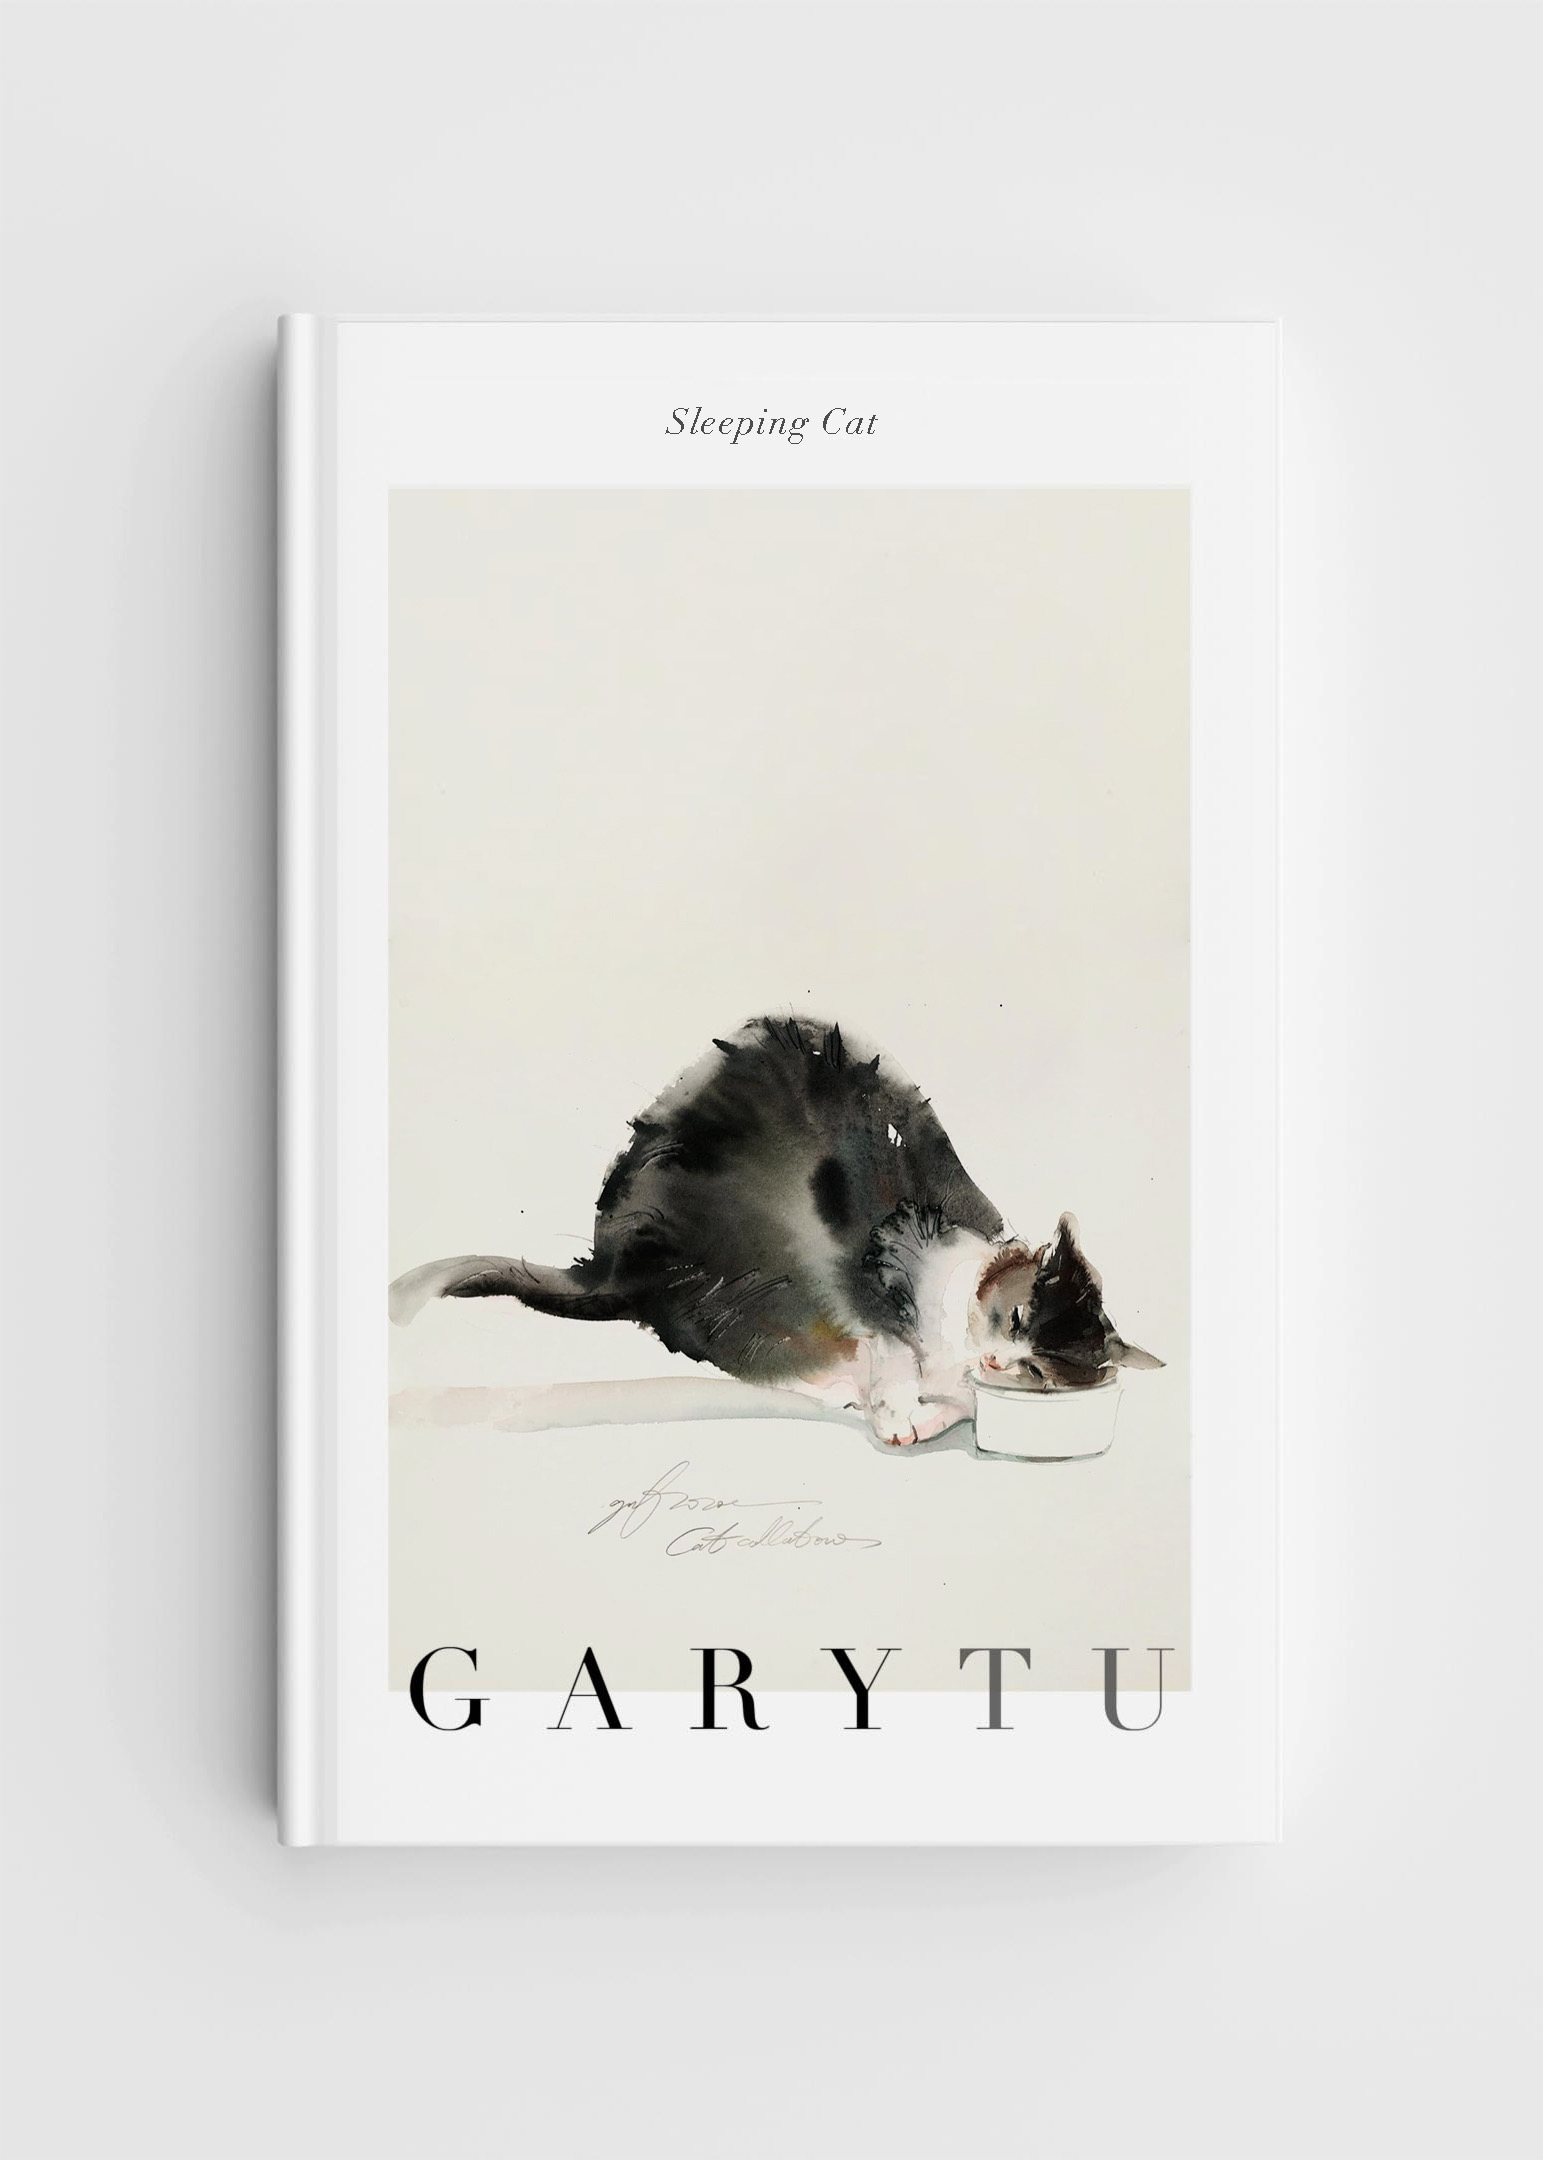  Gary Tu 時尚貓咪筆記本 